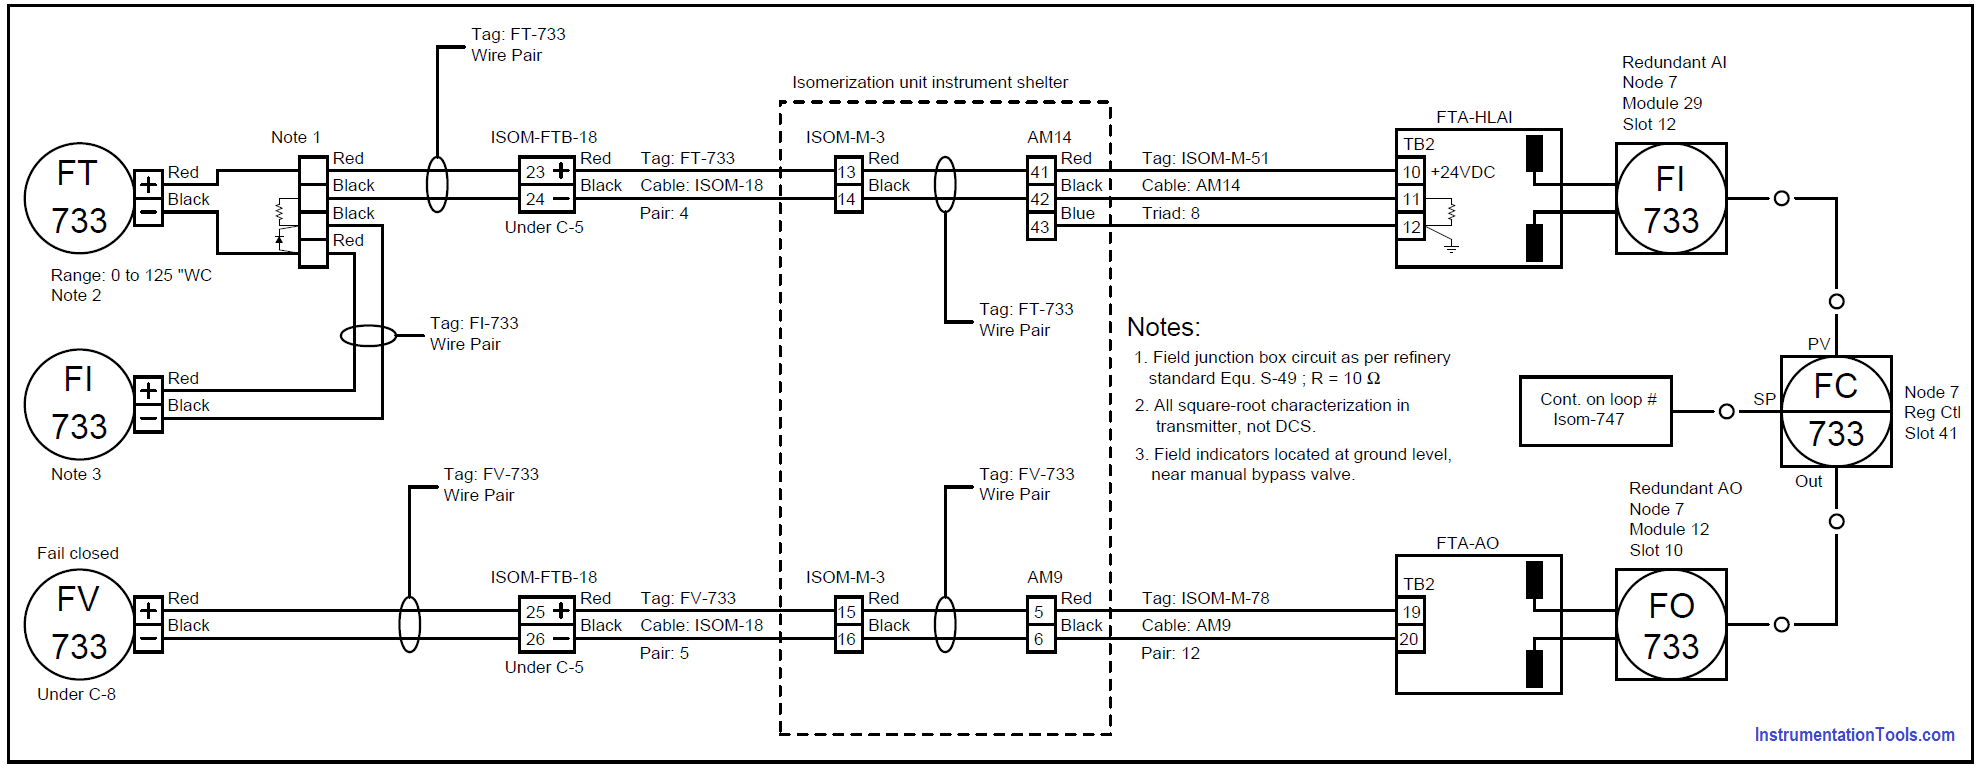 15 Loop Diagram Questions, Loop Wiring Diagram Does Not Show